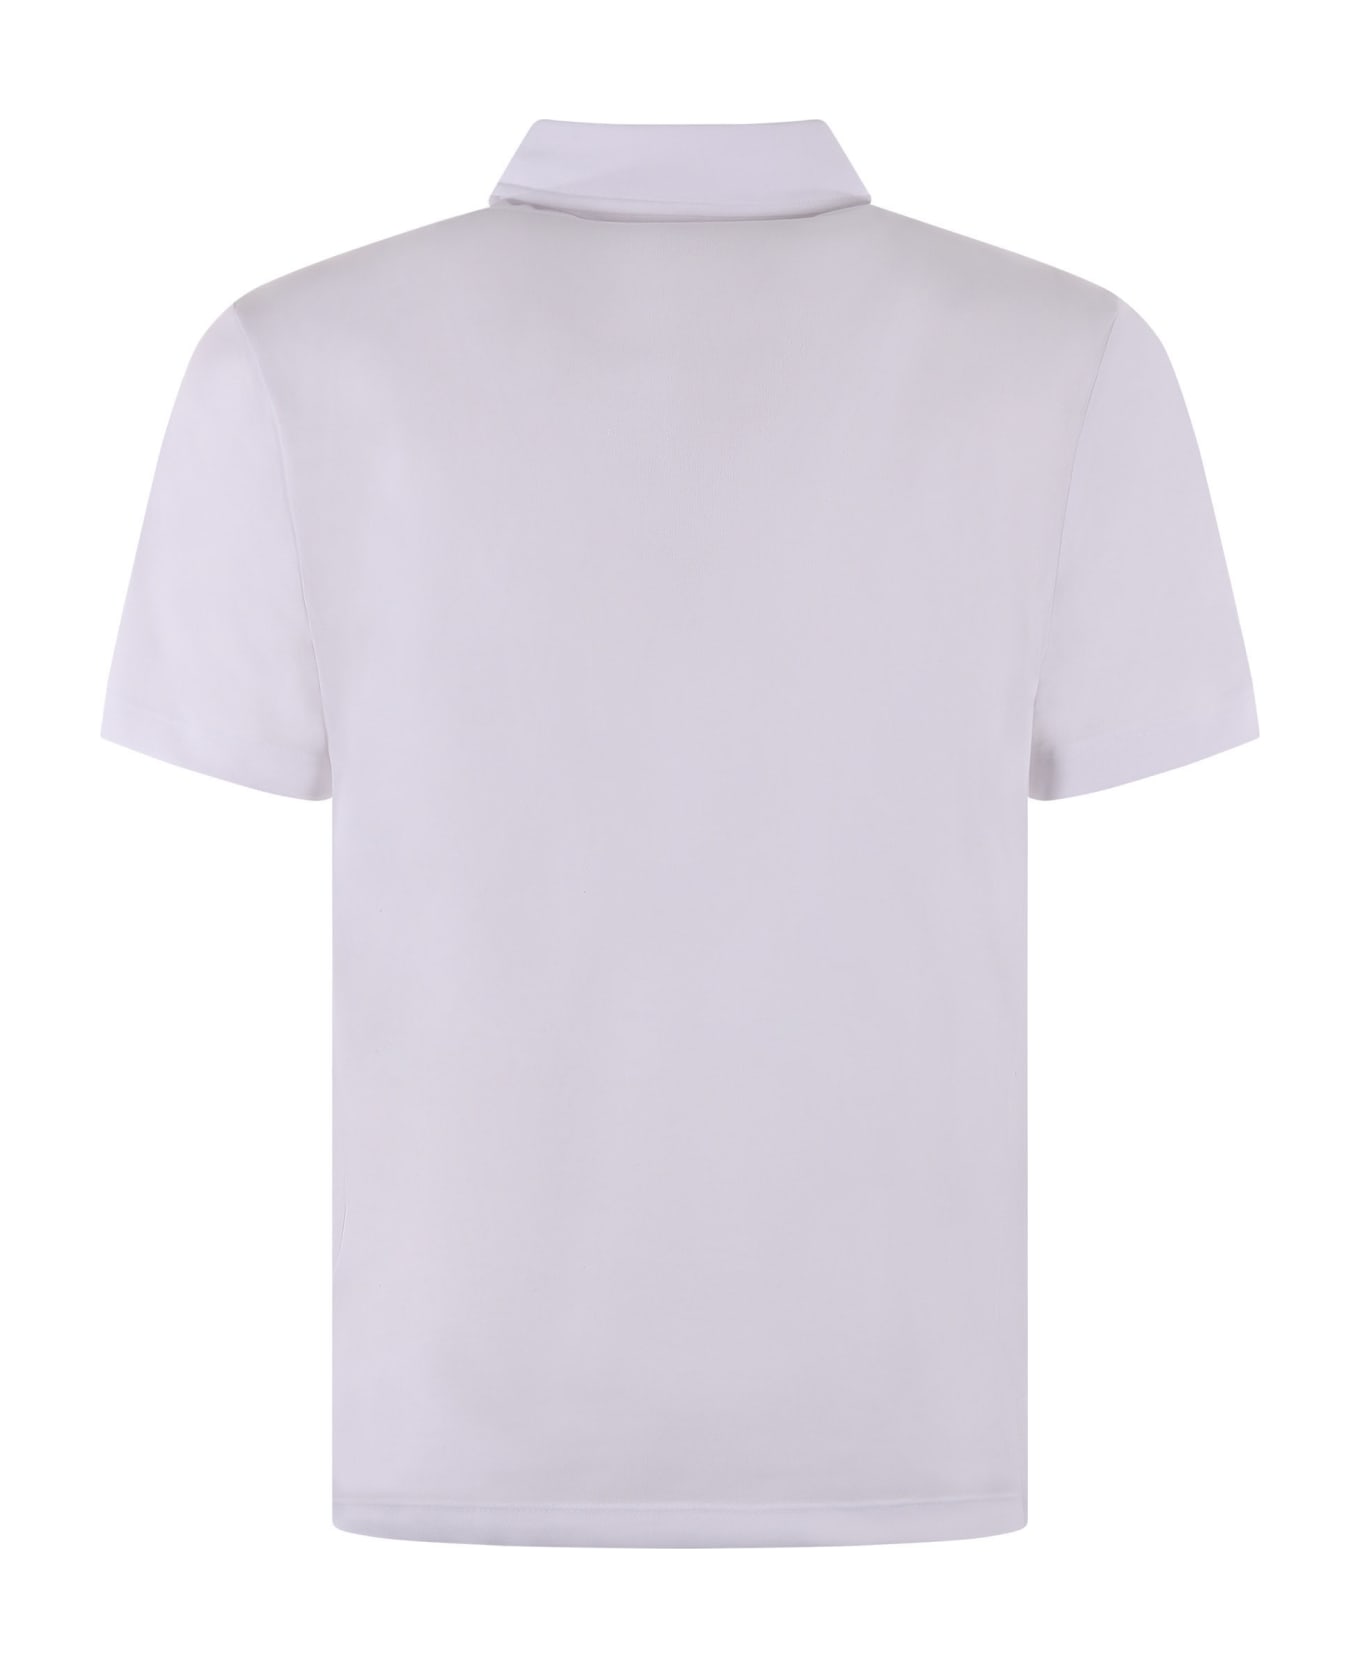 Blauer Polo Shirt - Bianco ポロシャツ